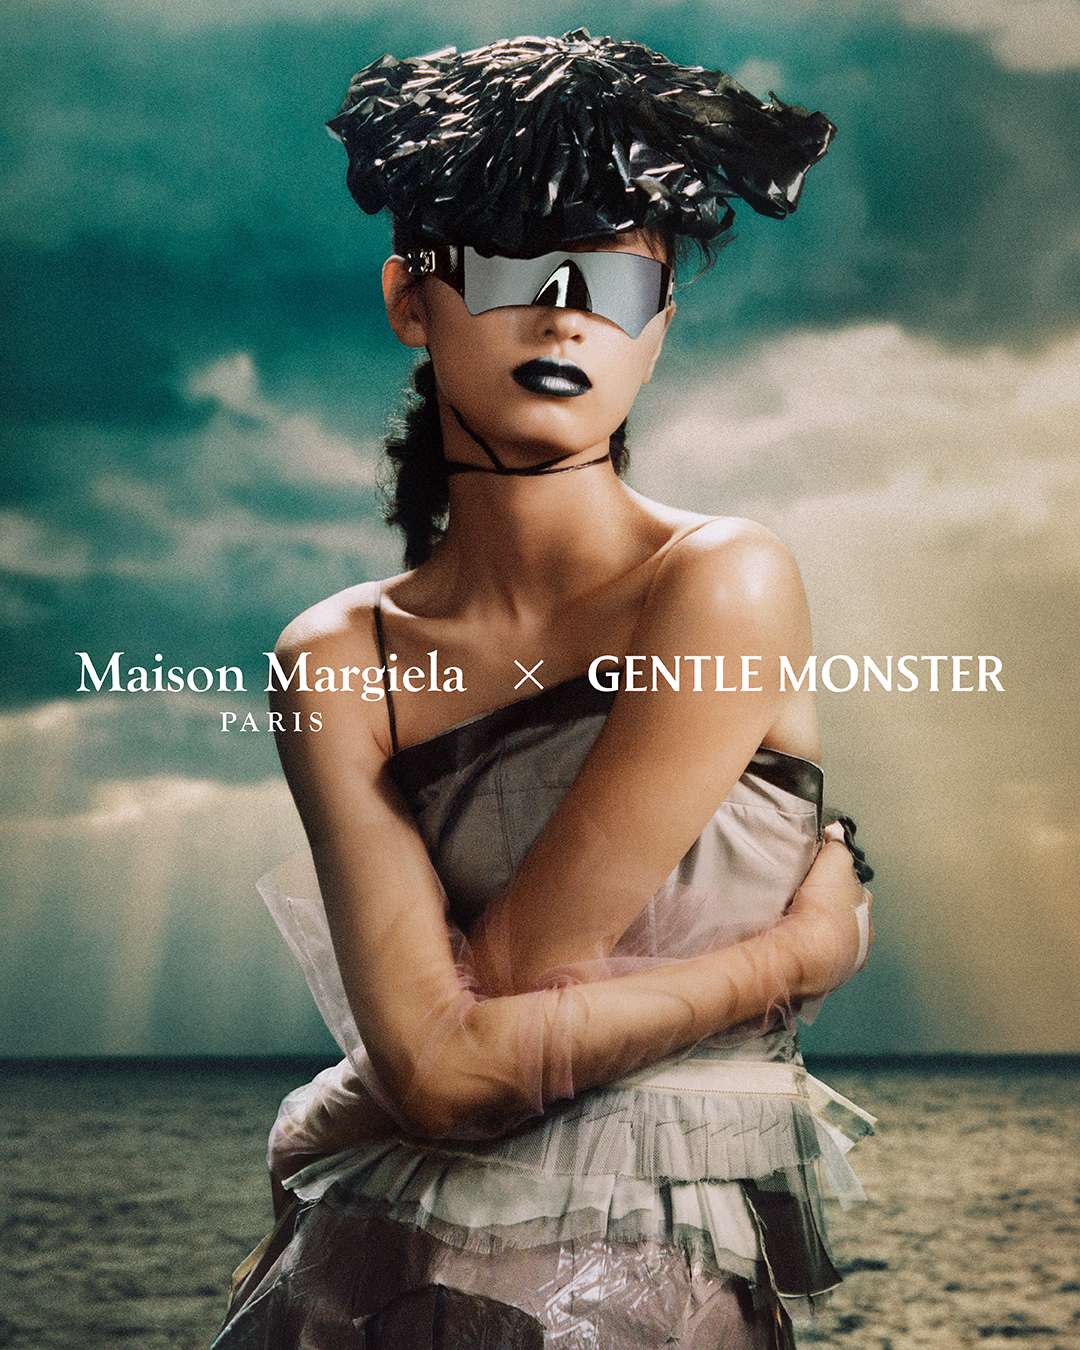 Maison Margiela X Gentle Monster Second Collaboration